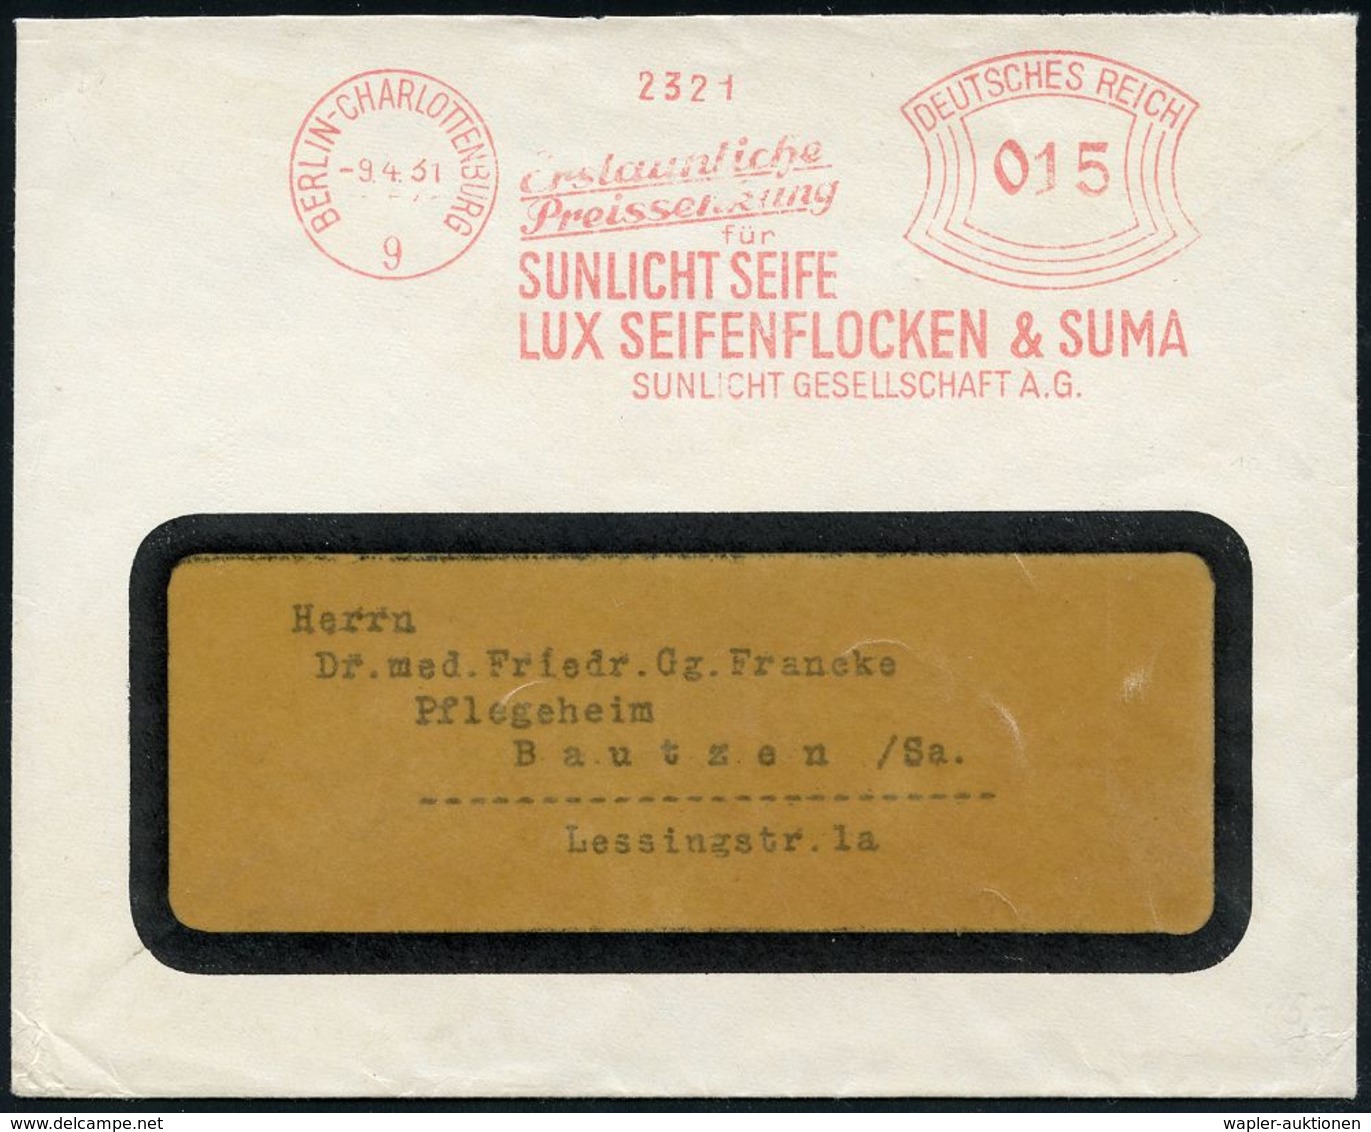 HYGIENE / KÖRPERPFLEGE : BERLIN-CHARLOTTENBURG/ 9/ ..Preissenkung/ Für/ SUNLICHT SEIFE/ LUX SEIFENFLOCKEN & SUMA/  SUN-L - Pharmazie